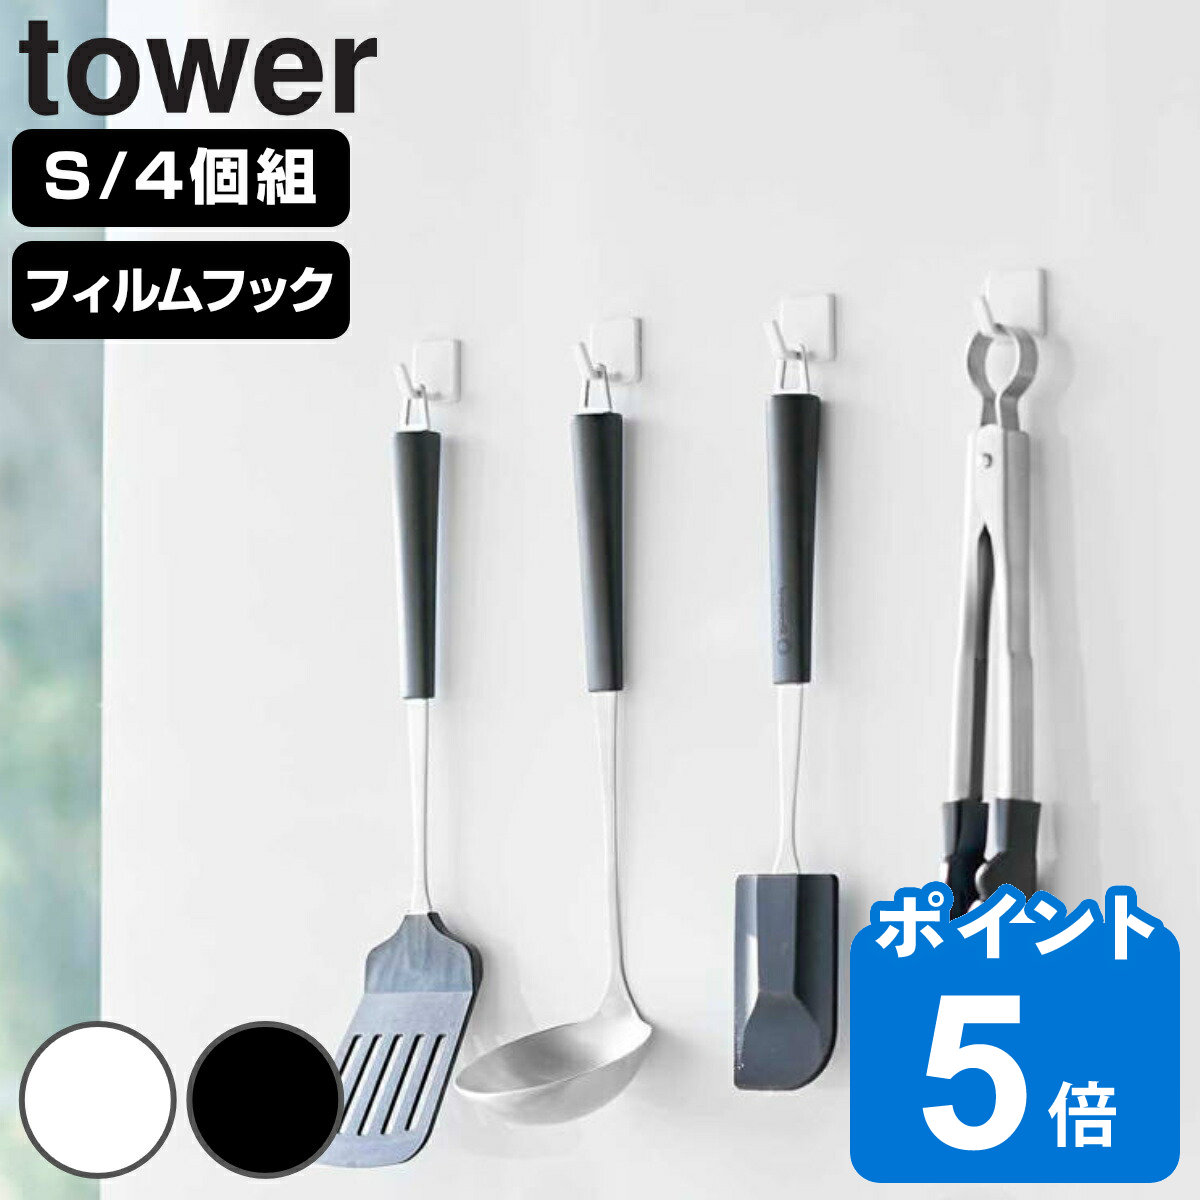 山崎実業 tower フィルムフック タワー S 4個組